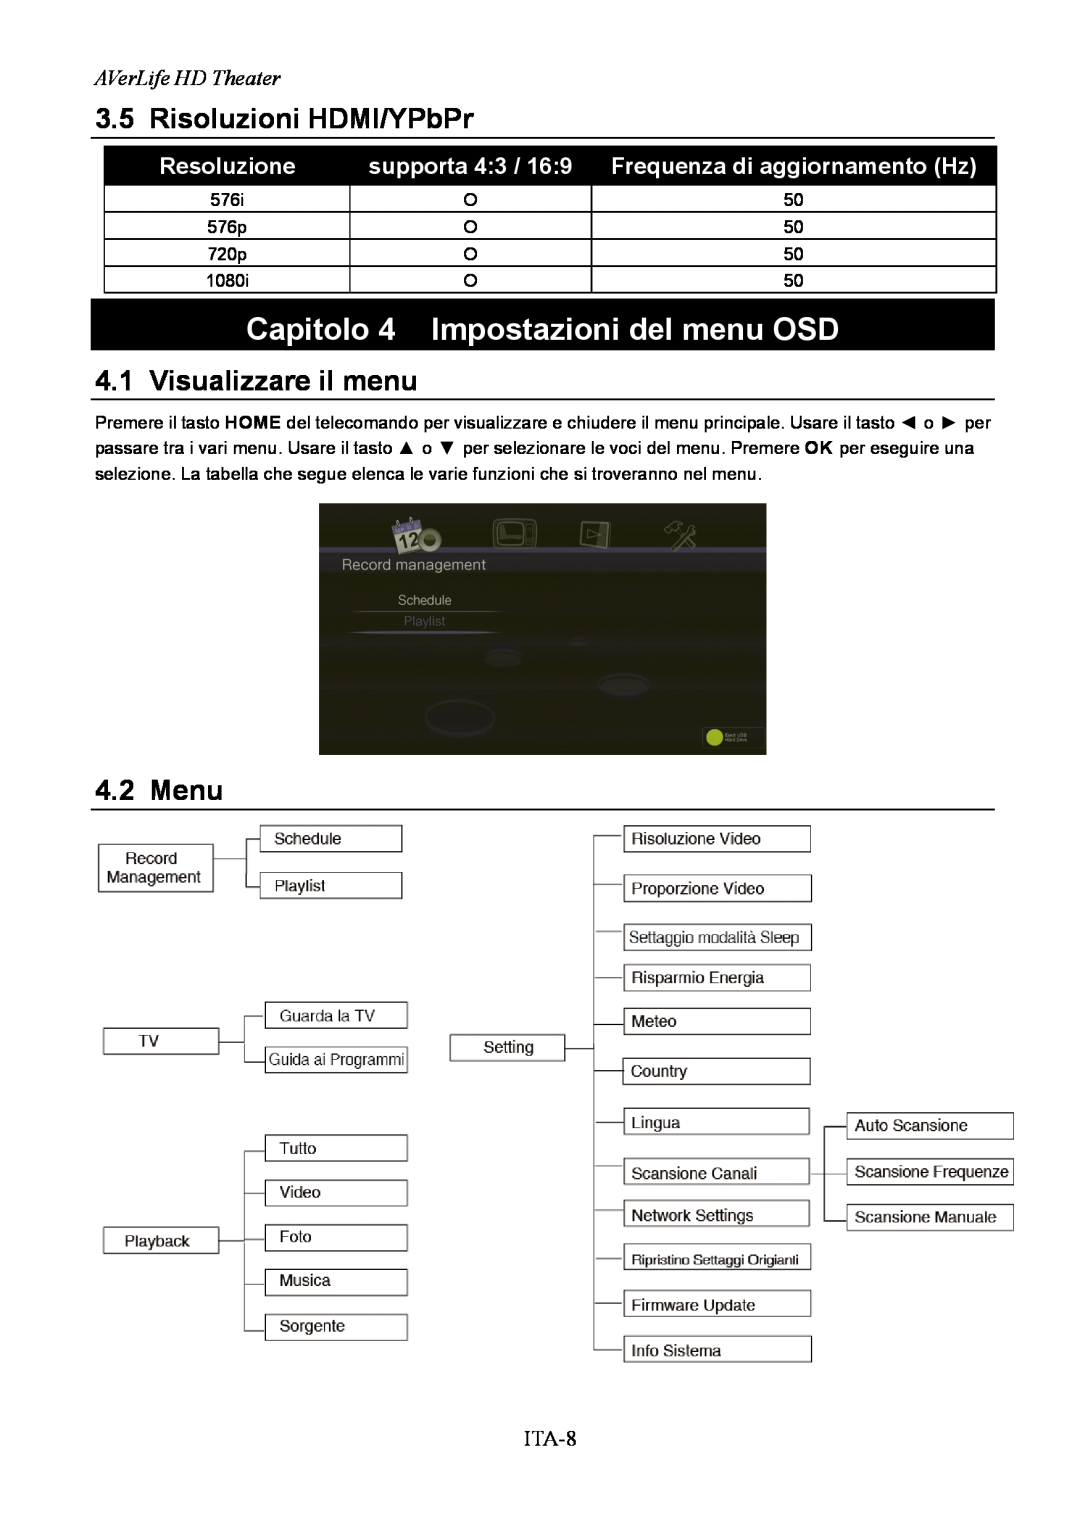 AVerMedia Technologies A211 Capitolo 4 Impostazioni del menu OSD, Resoluzione, supporta 4:3 / 16:9, AVerLife HD Theater 